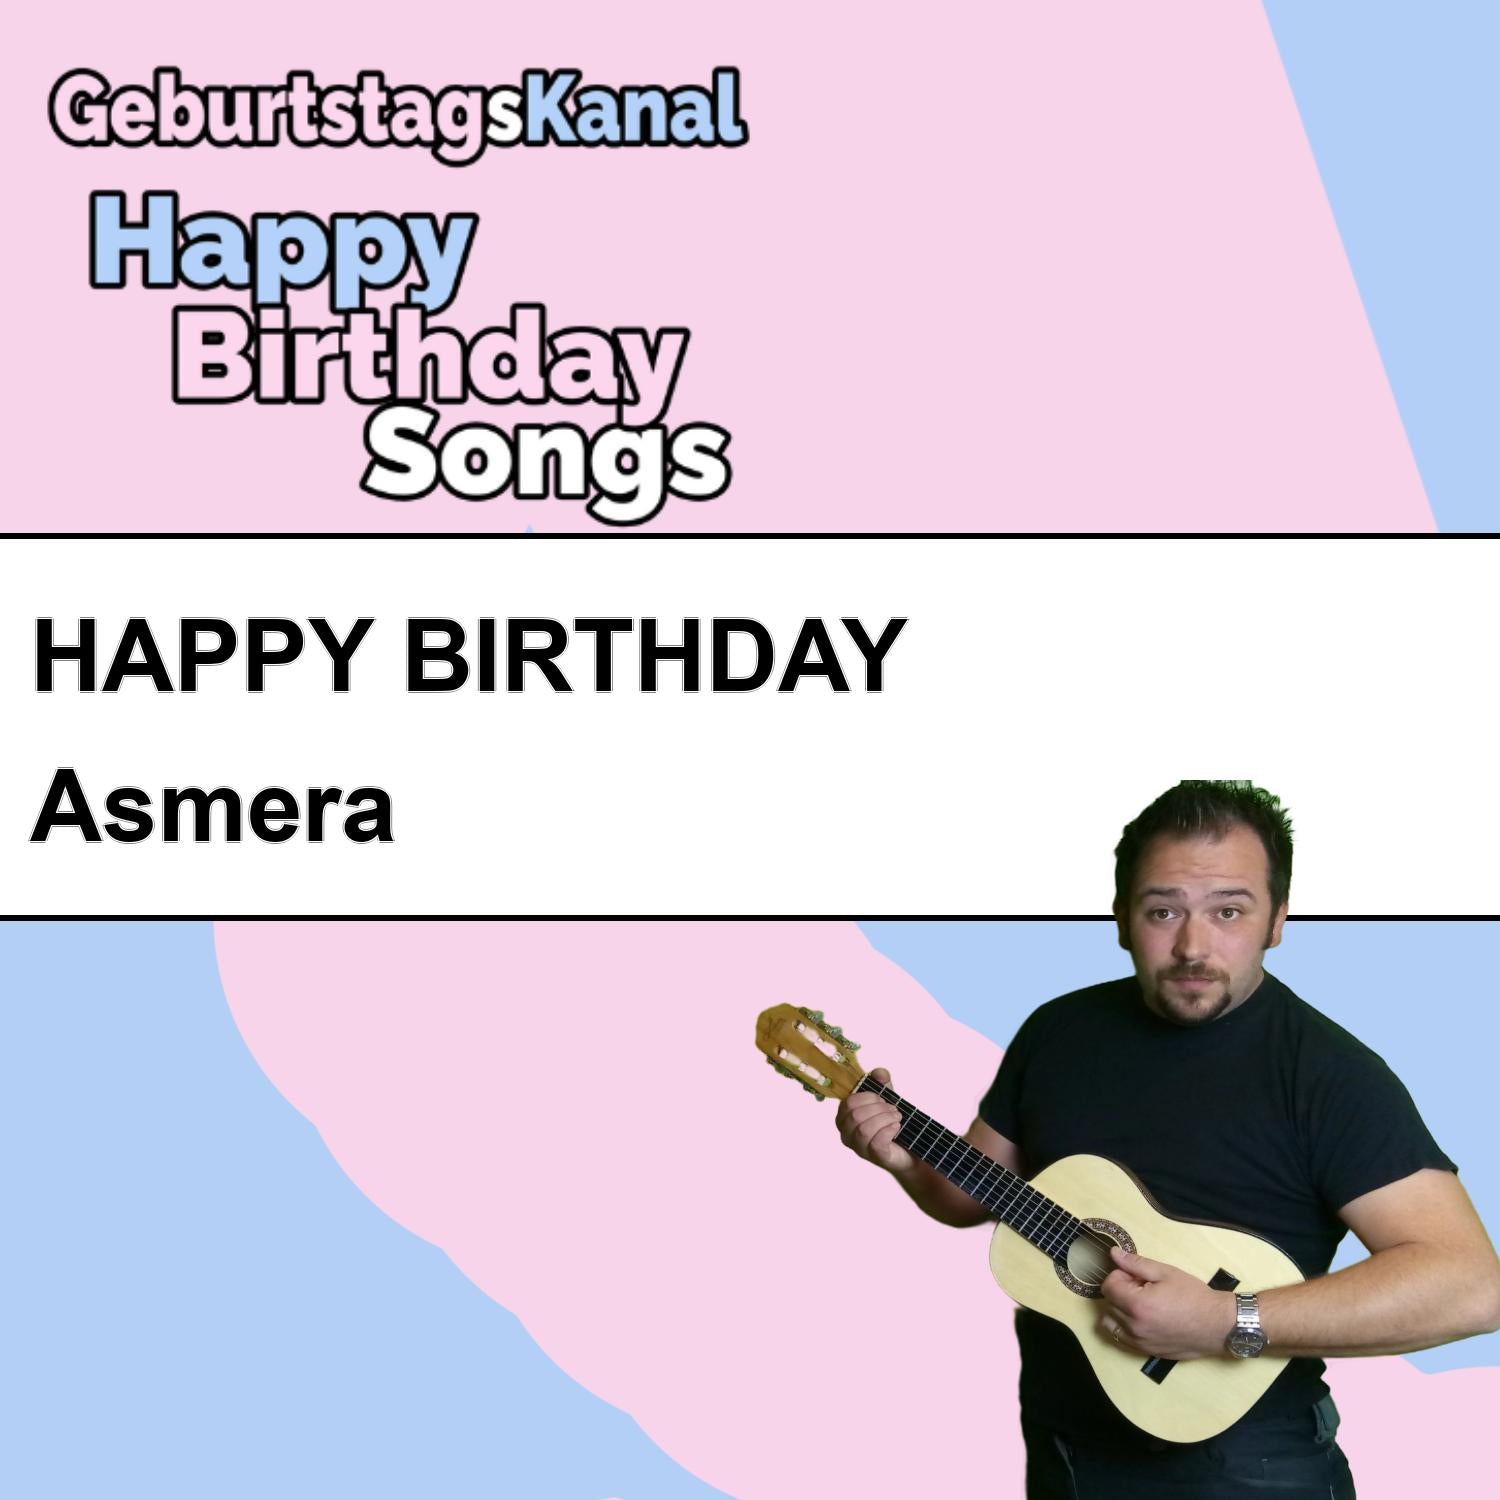 Produktbild Happy Birthday to you Asmera mit Wunschgrußbotschaft